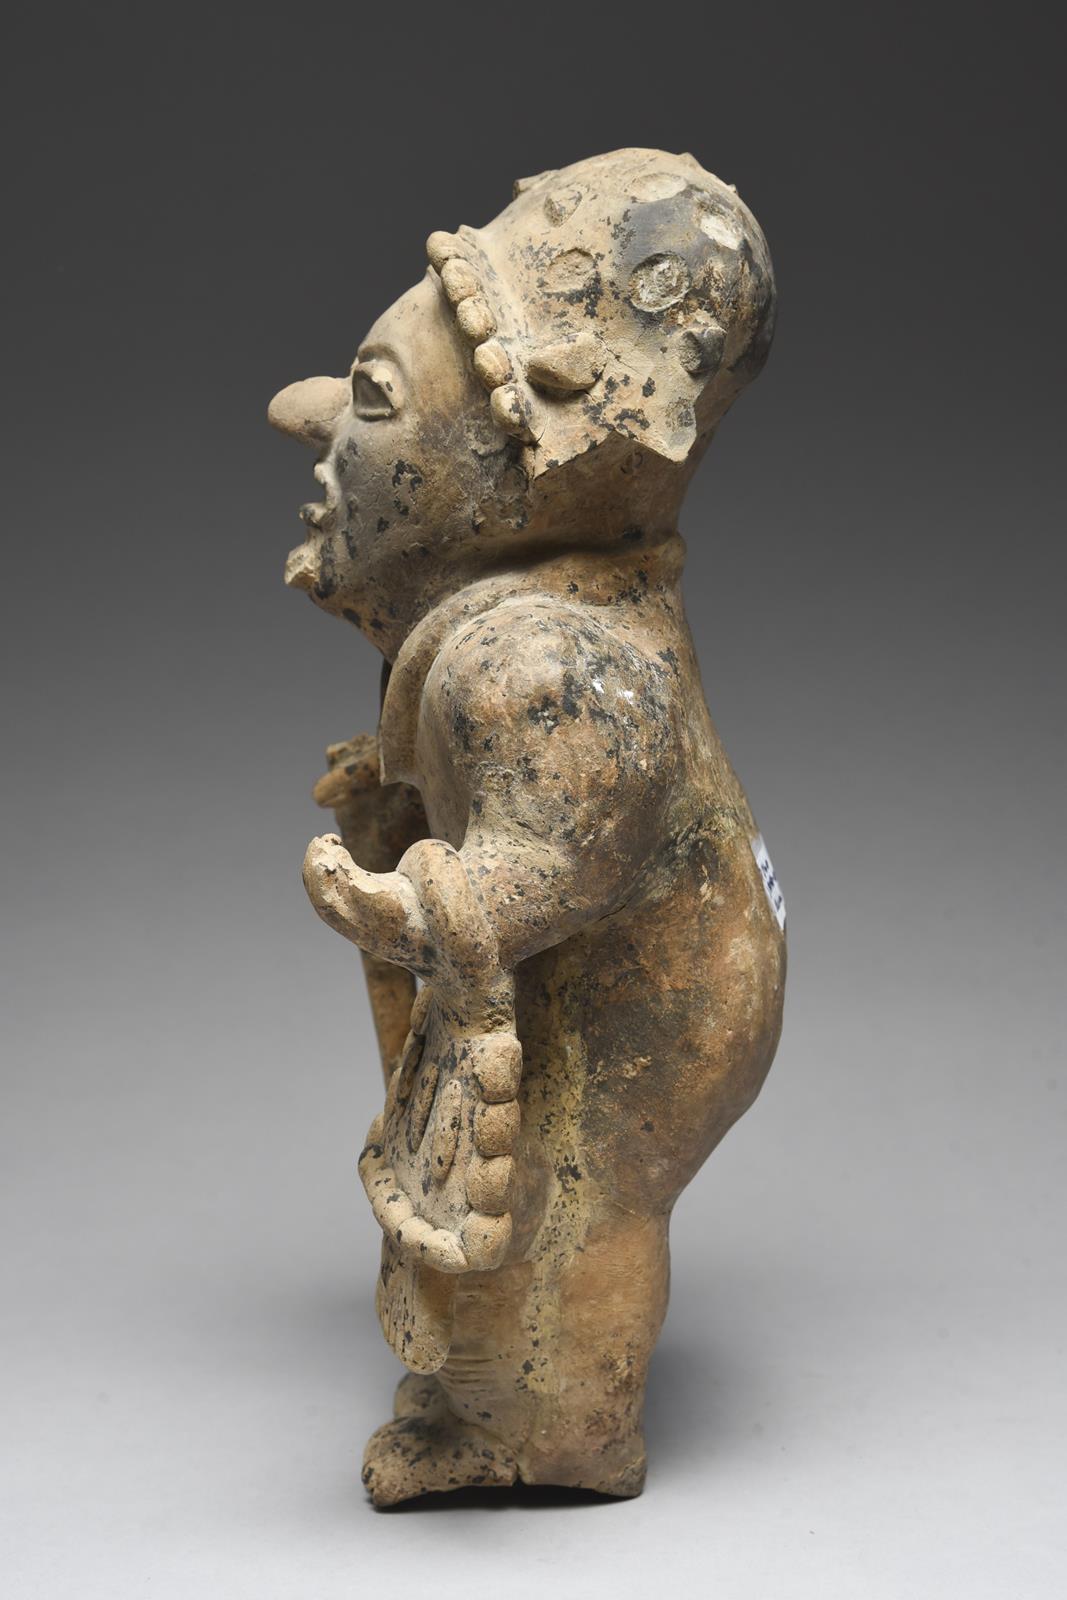 A Jama Coaque standing warrior Ecuador, circa 500 BC - 600 AD pottery, wearing a headdress, necklace - Image 2 of 4